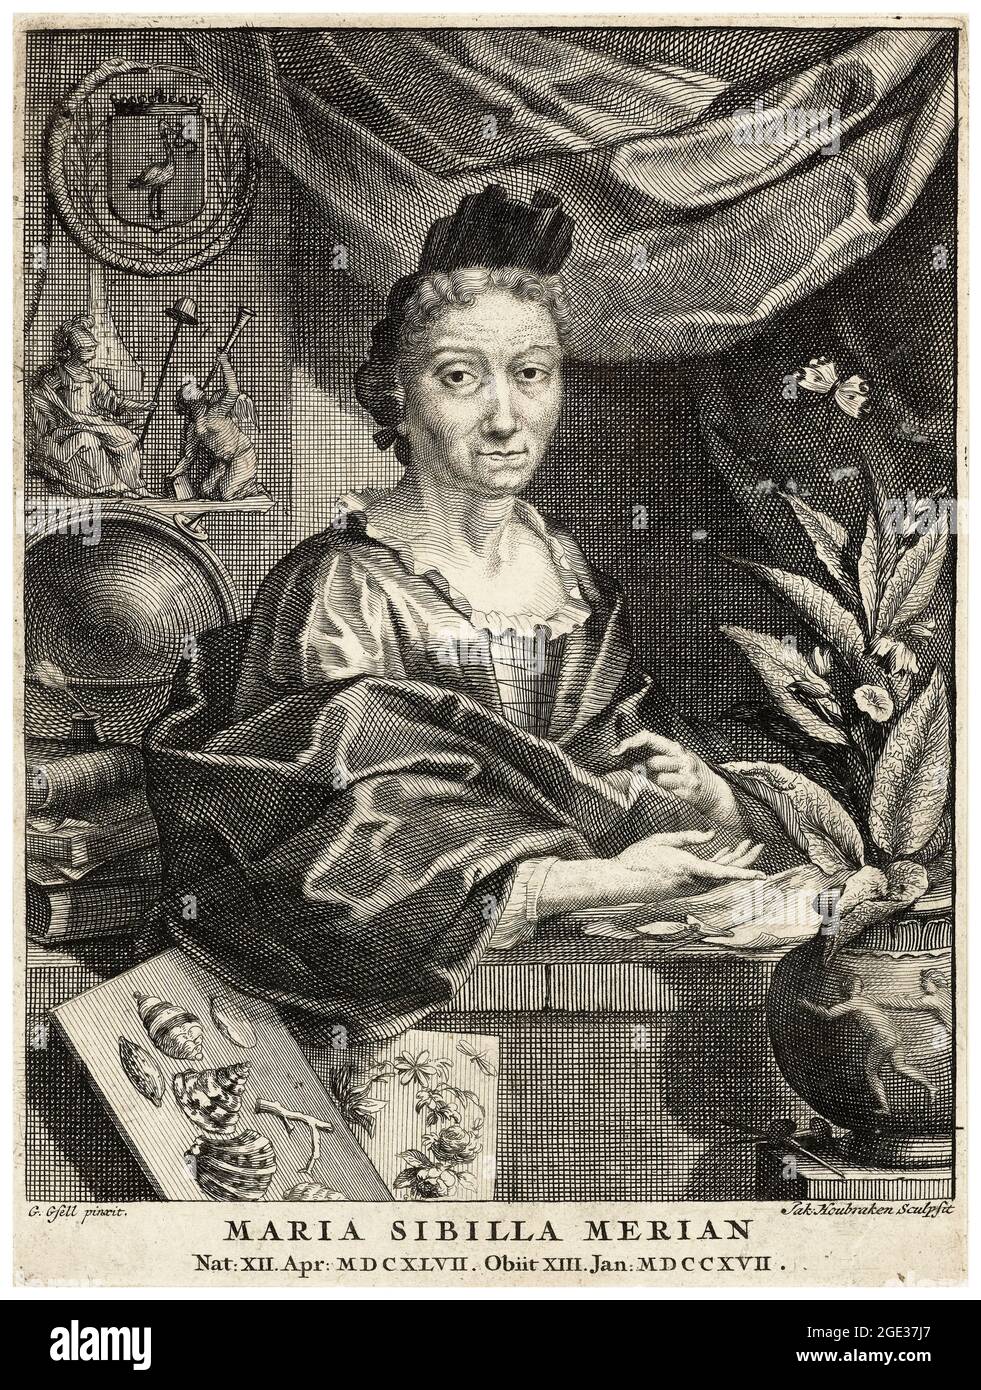 Maria Sibylla Merian, (1647-1717), naturalista alemán, ilustradora científica, grabado de retrato de Jacob Houbraken después de Georg Gsel, 1708-1780 Foto de stock